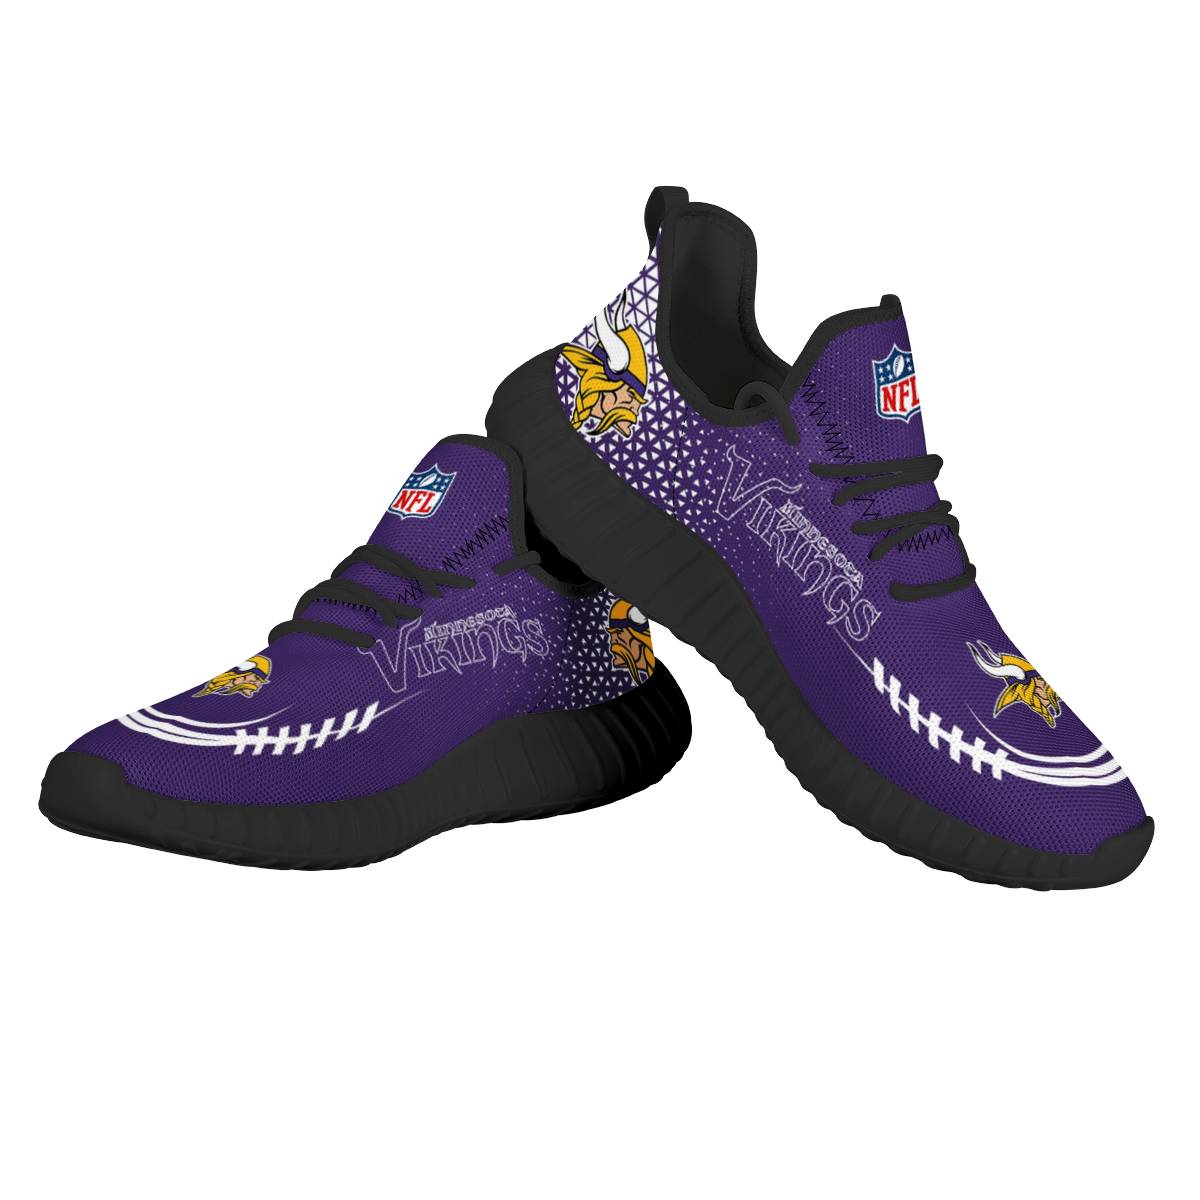 Men's NFL Minnesota Vikings Mesh Knit Sneakers/Shoes 001